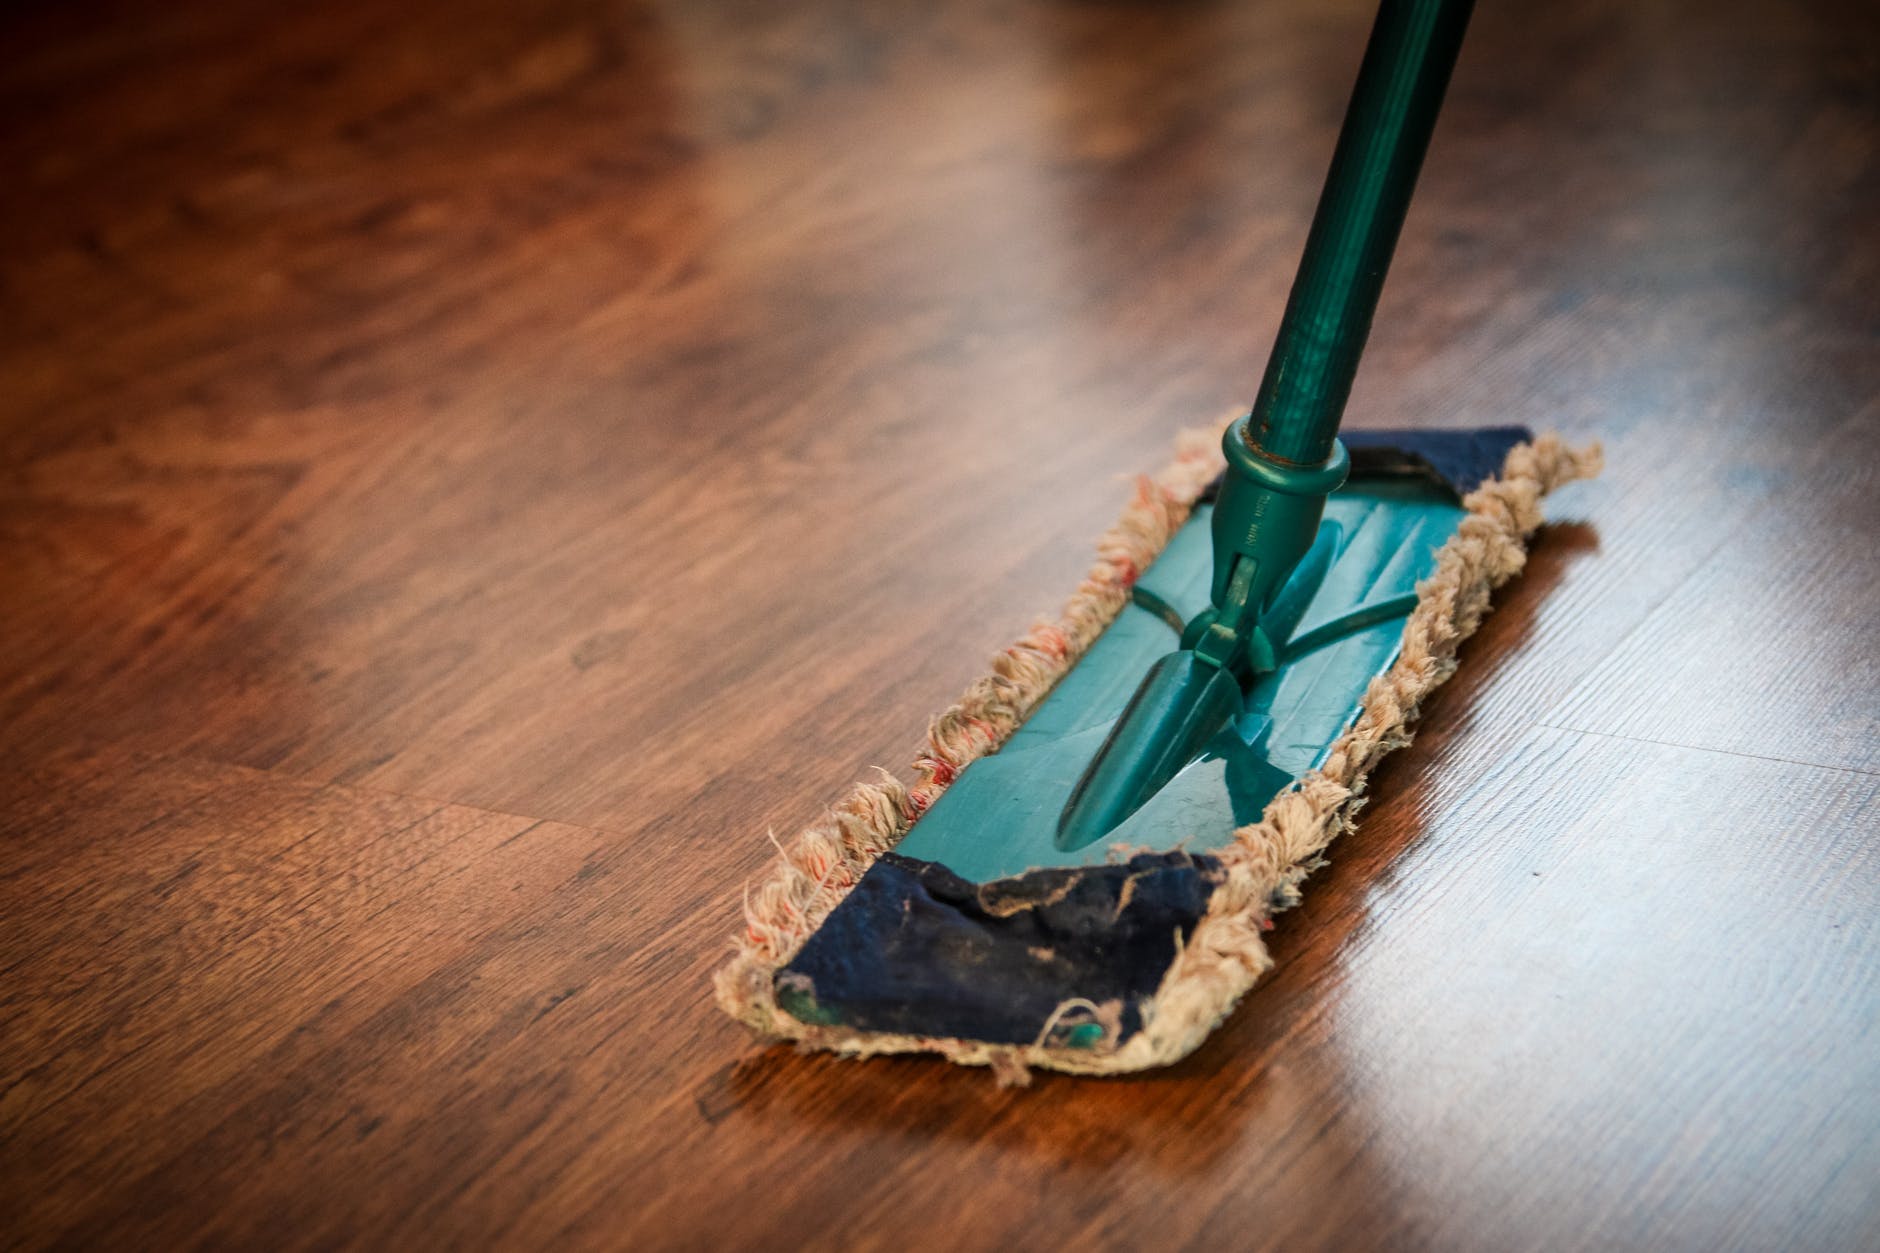 thuis Taiko buik Monica 4 tips voor het dweilen van houten vloeren | De Hout & Vloer specialist